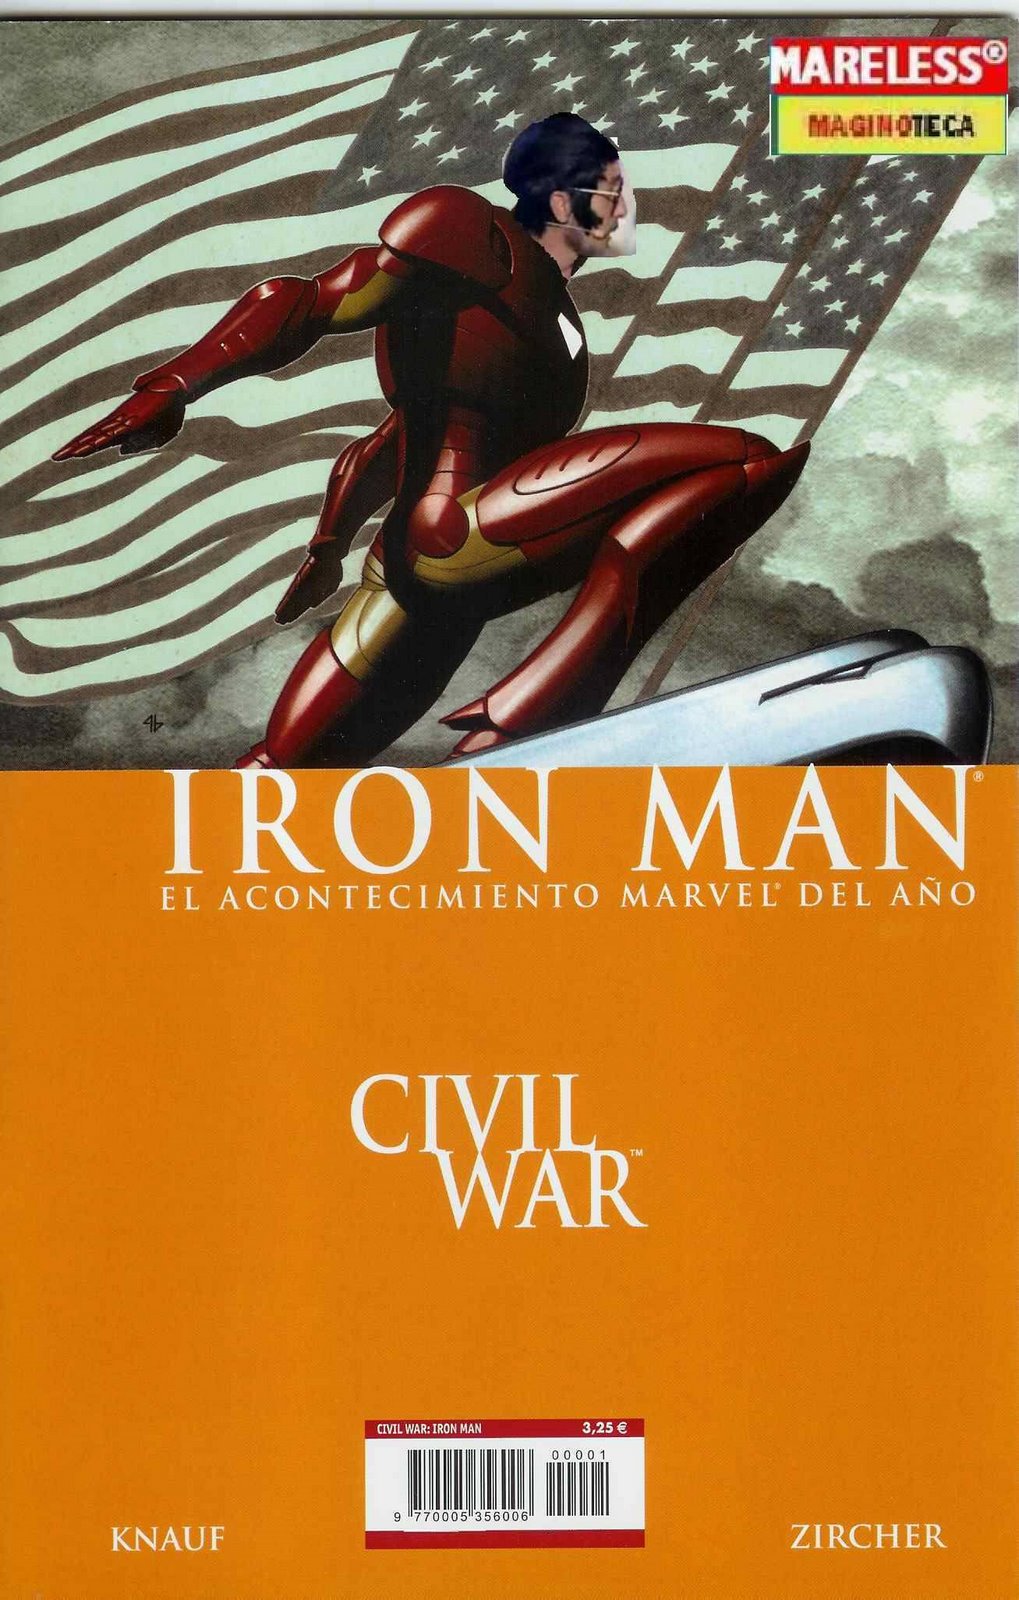 [chiki+iron+man+civil+war.jpg]